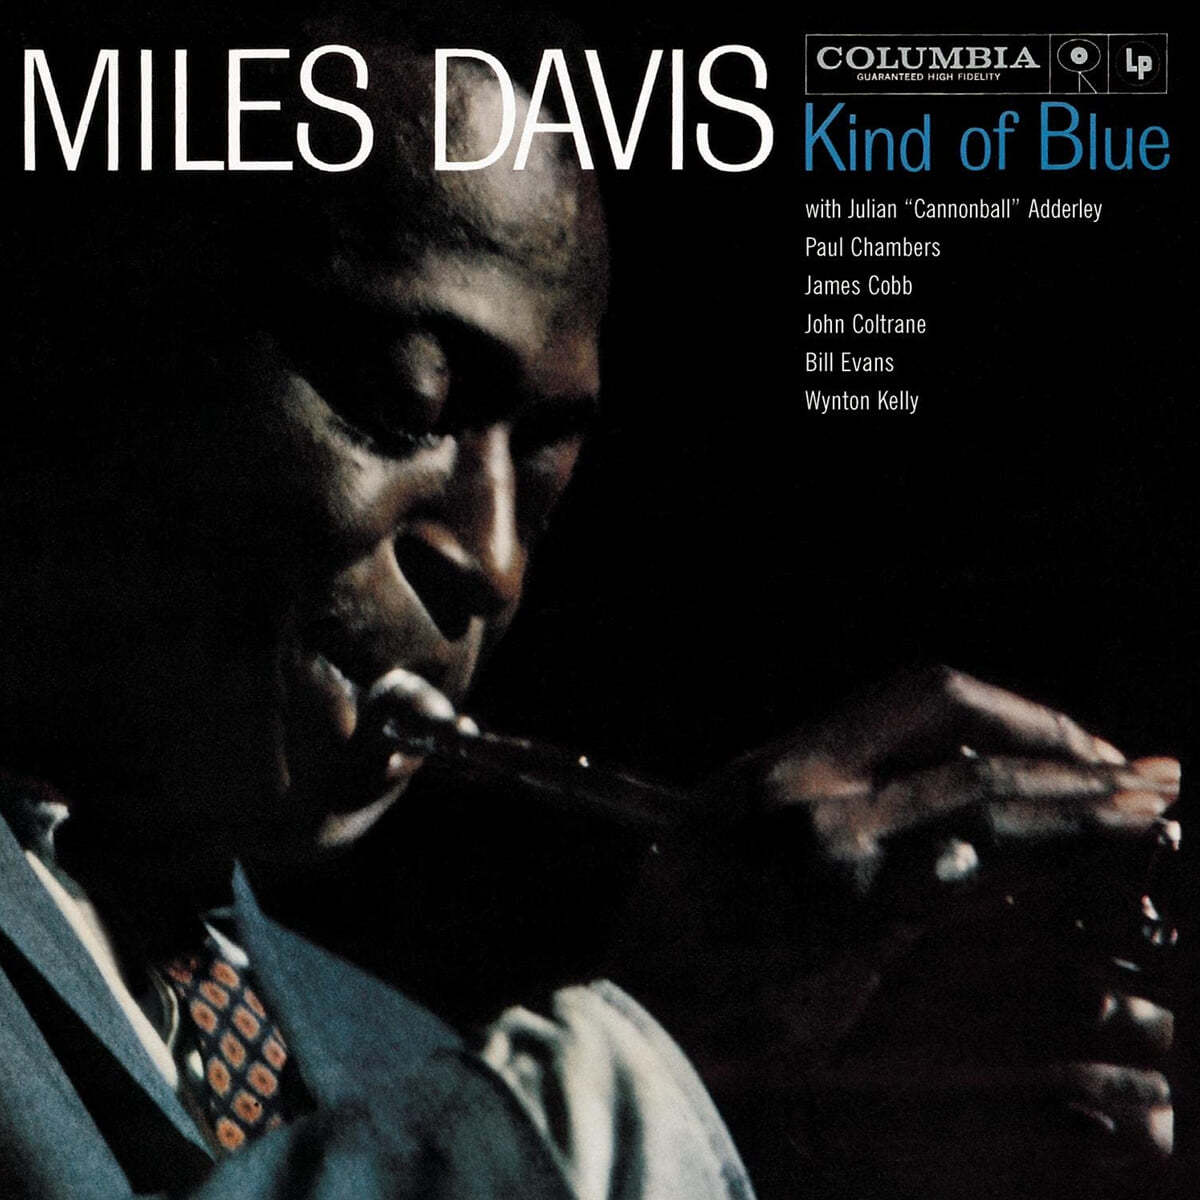 Miles Davis (마일즈 데이비스) - Kind of Blue [투명 컬러 LP] 